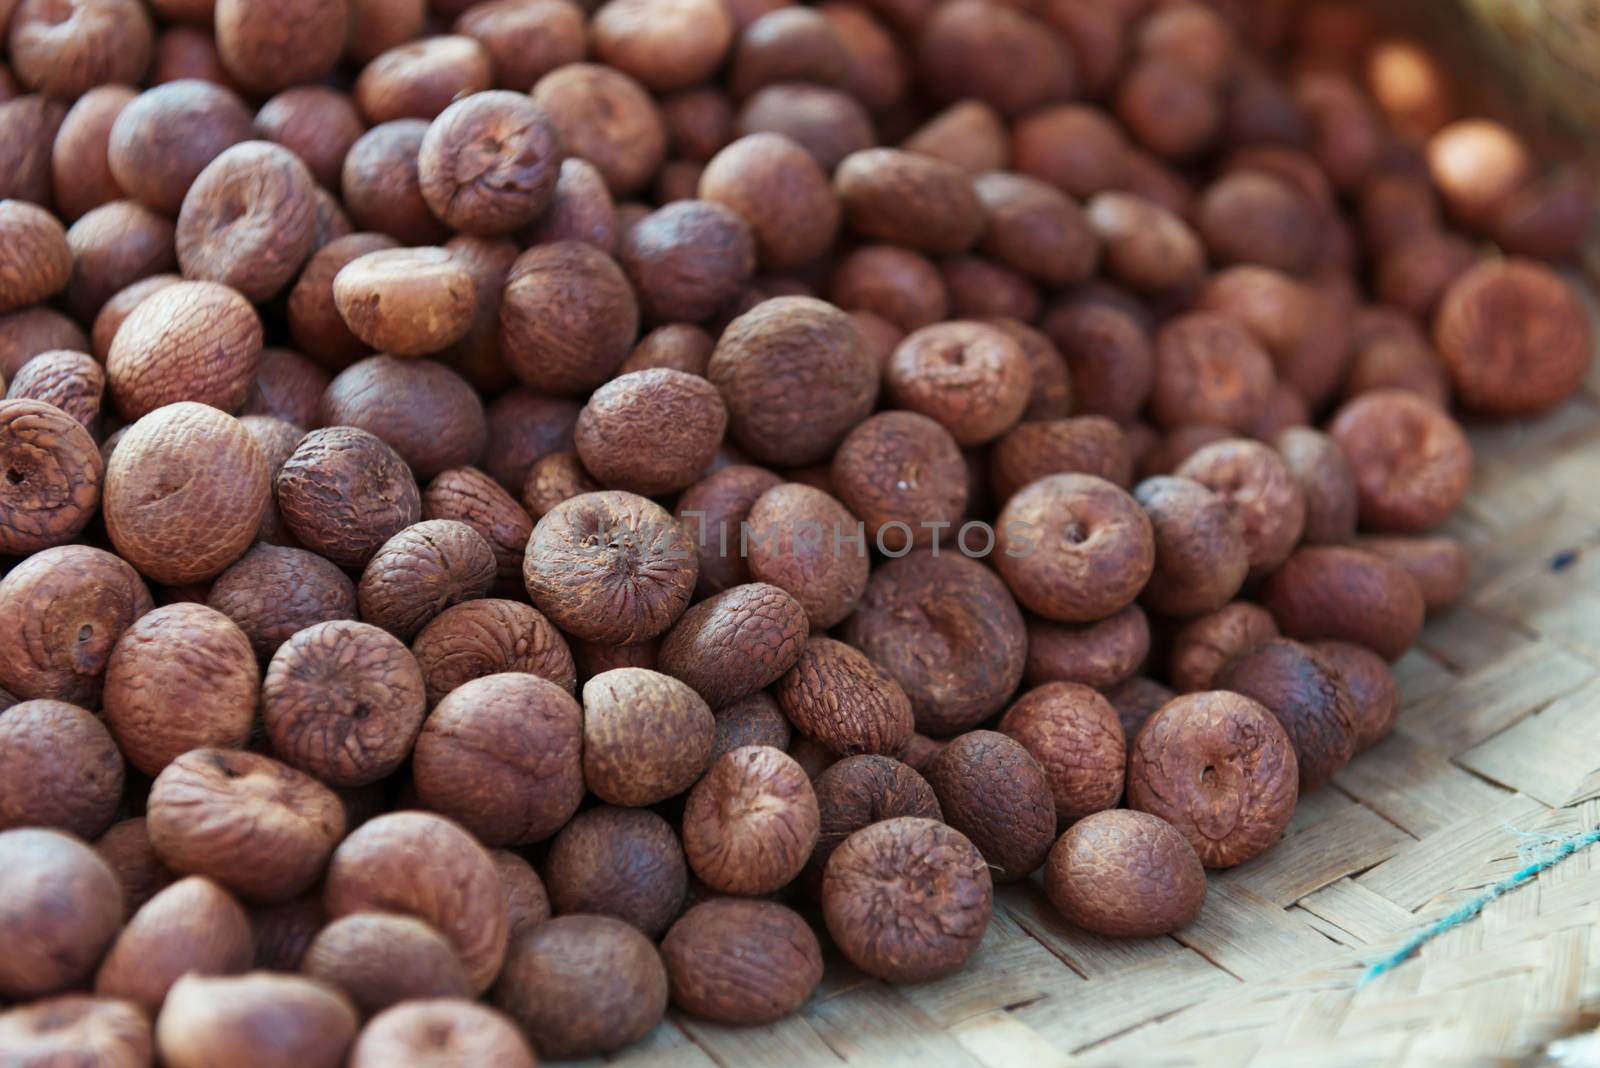 Heap of dry full nutmegs on open market